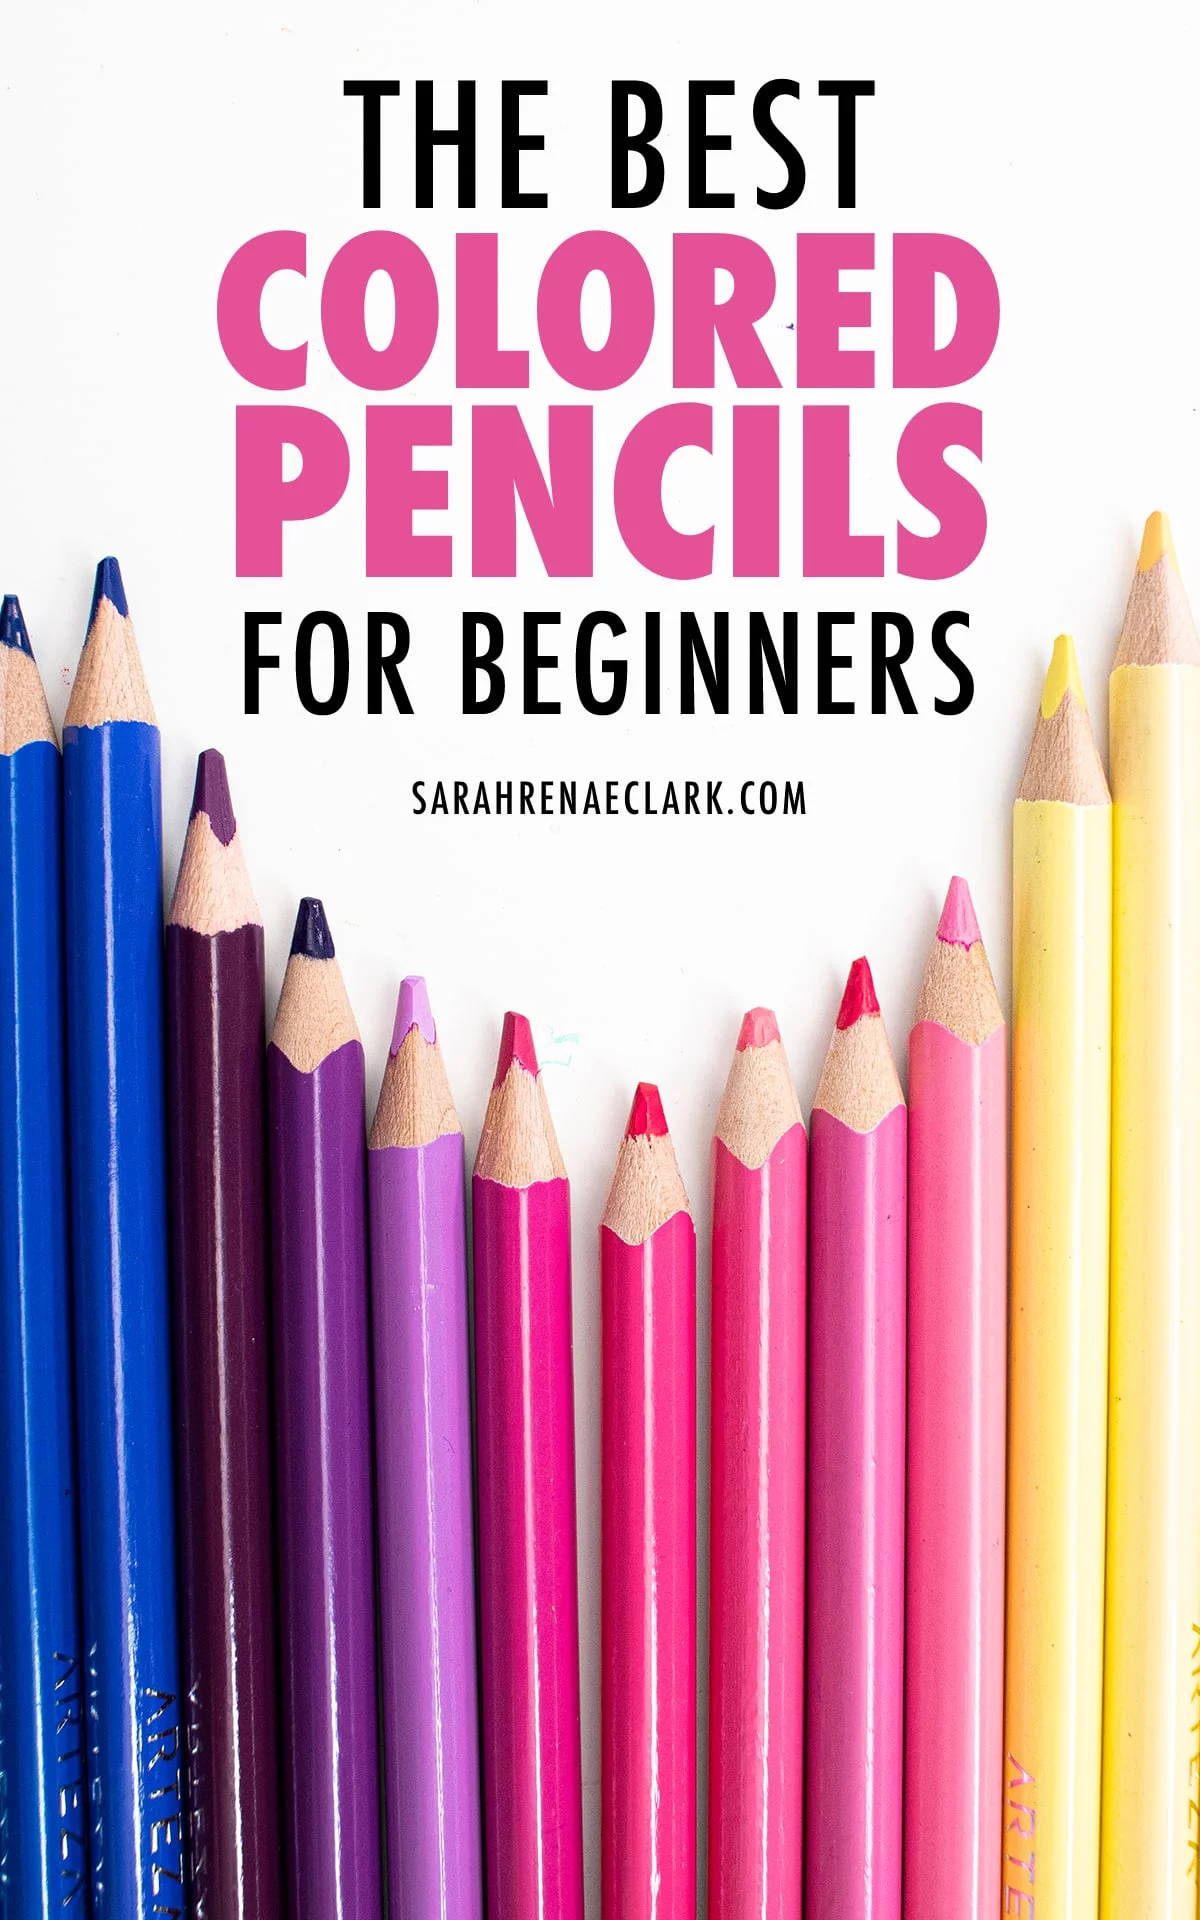 https://sarahrenaeclark.com/wp-content/uploads/2021/01/best-colored-pencils-beginners-169.jpg.webp